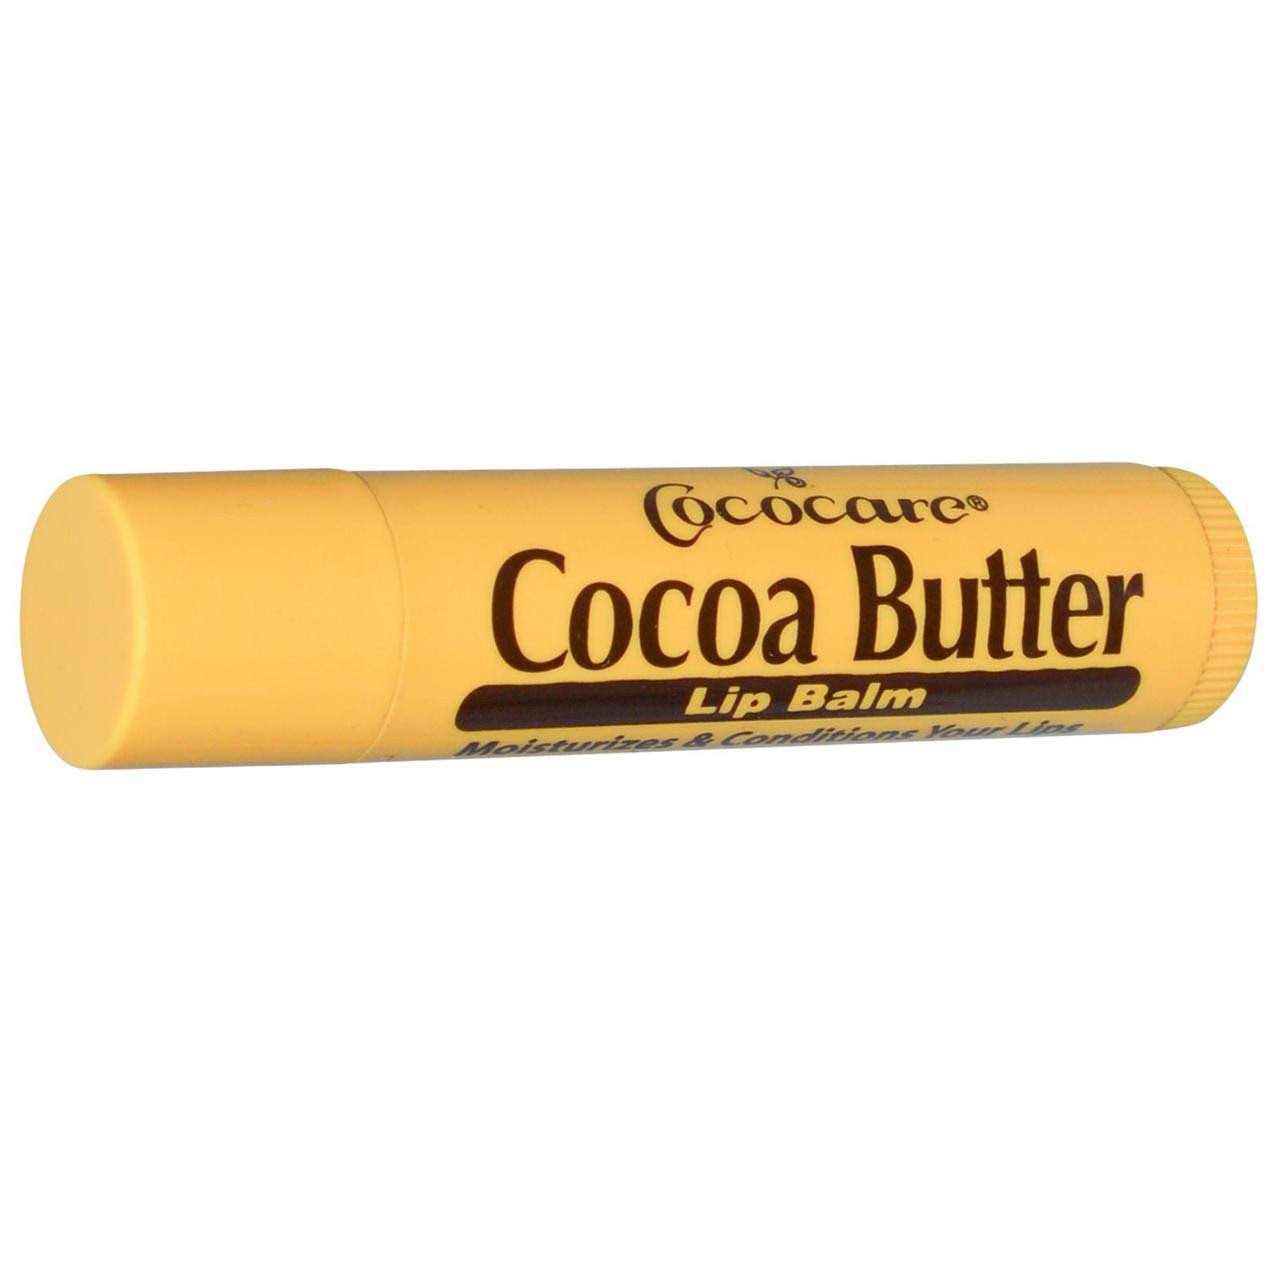 Cococare Cocoa Butter Lip Balm - Moisturizer, 0.15oz, 24 Pack